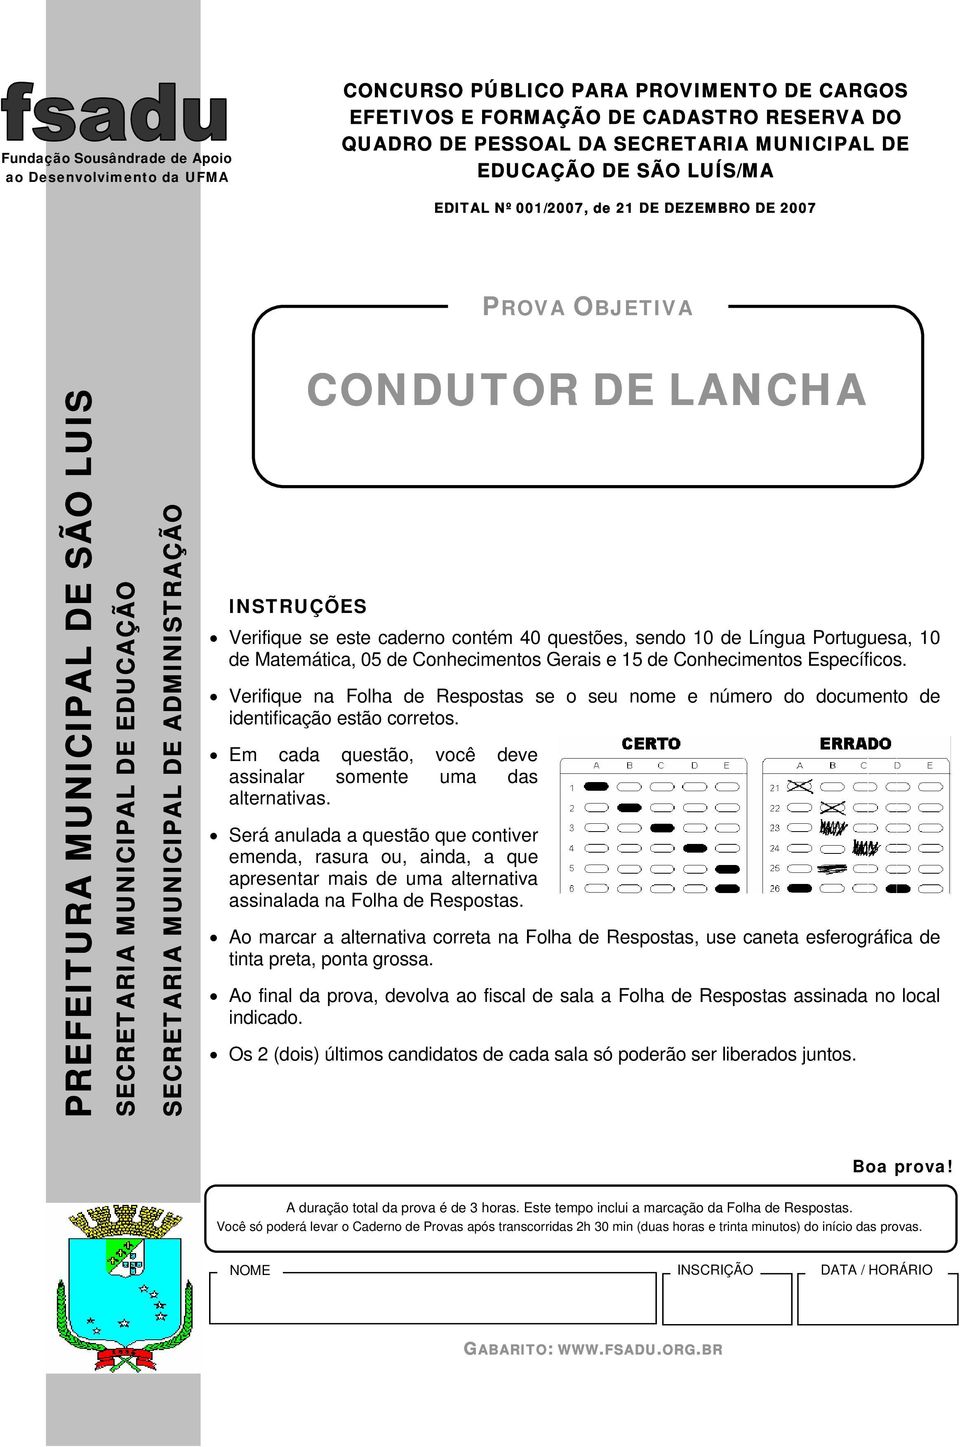 INSTRUÇÕES Verifique se este caderno contém 40 questões, sendo 10 de Língua Portuguesa, 10 de Matemática, 05 de Conhecimentos Gerais e 15 de Conhecimentos Específicos.